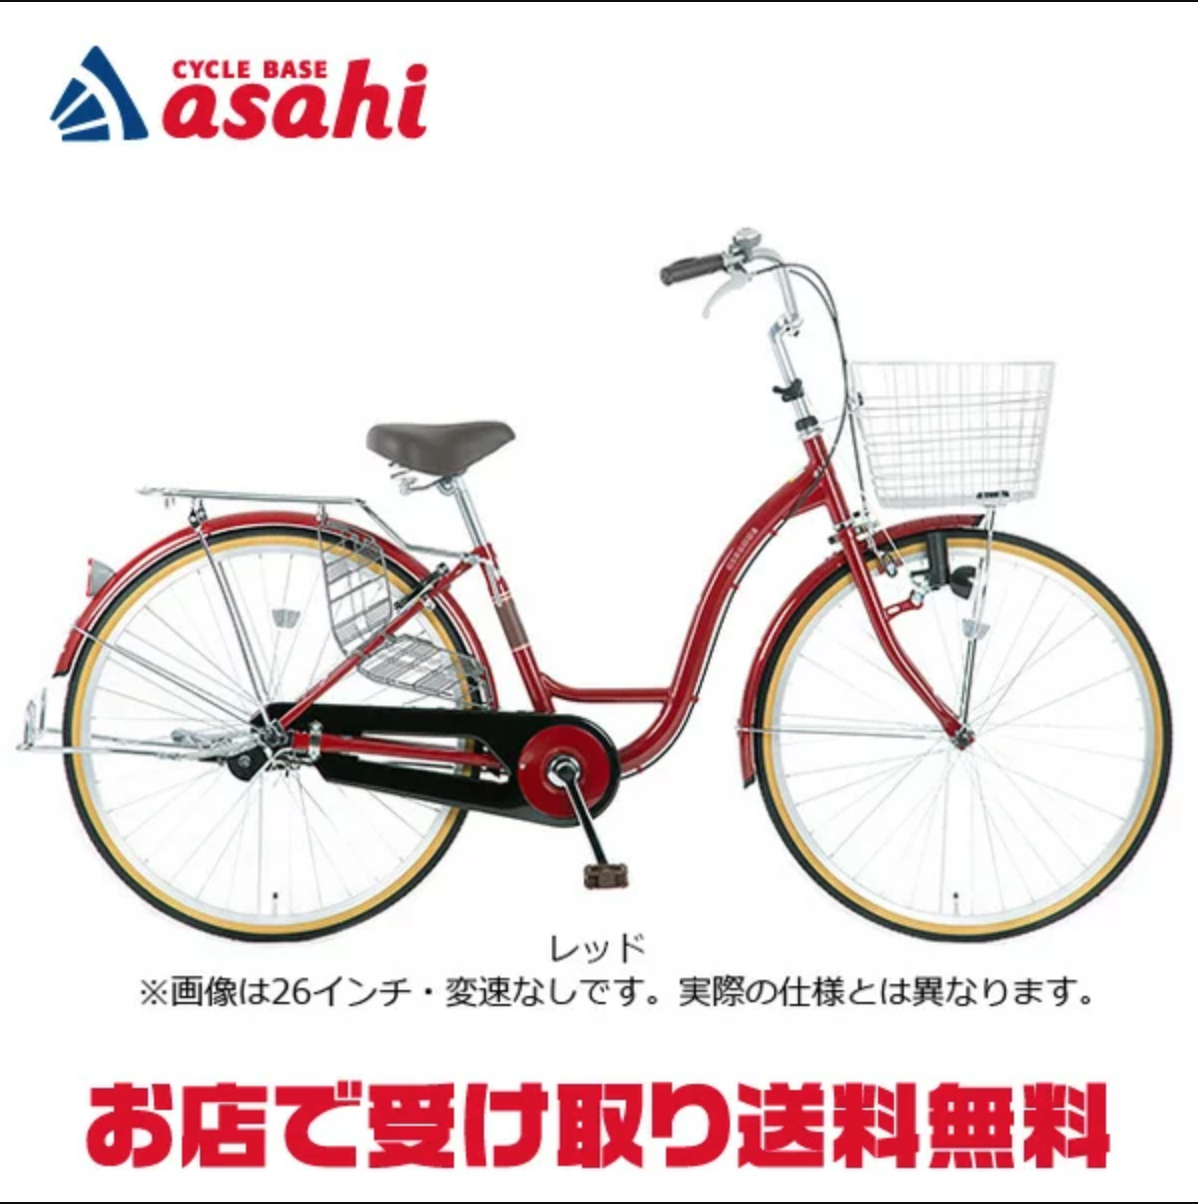 期間限定で特別価格 あさひ Asahi ワンタッチフェンダー20 20インチ小径車用 フロントのみ  champagne-dissaux-brochot.com